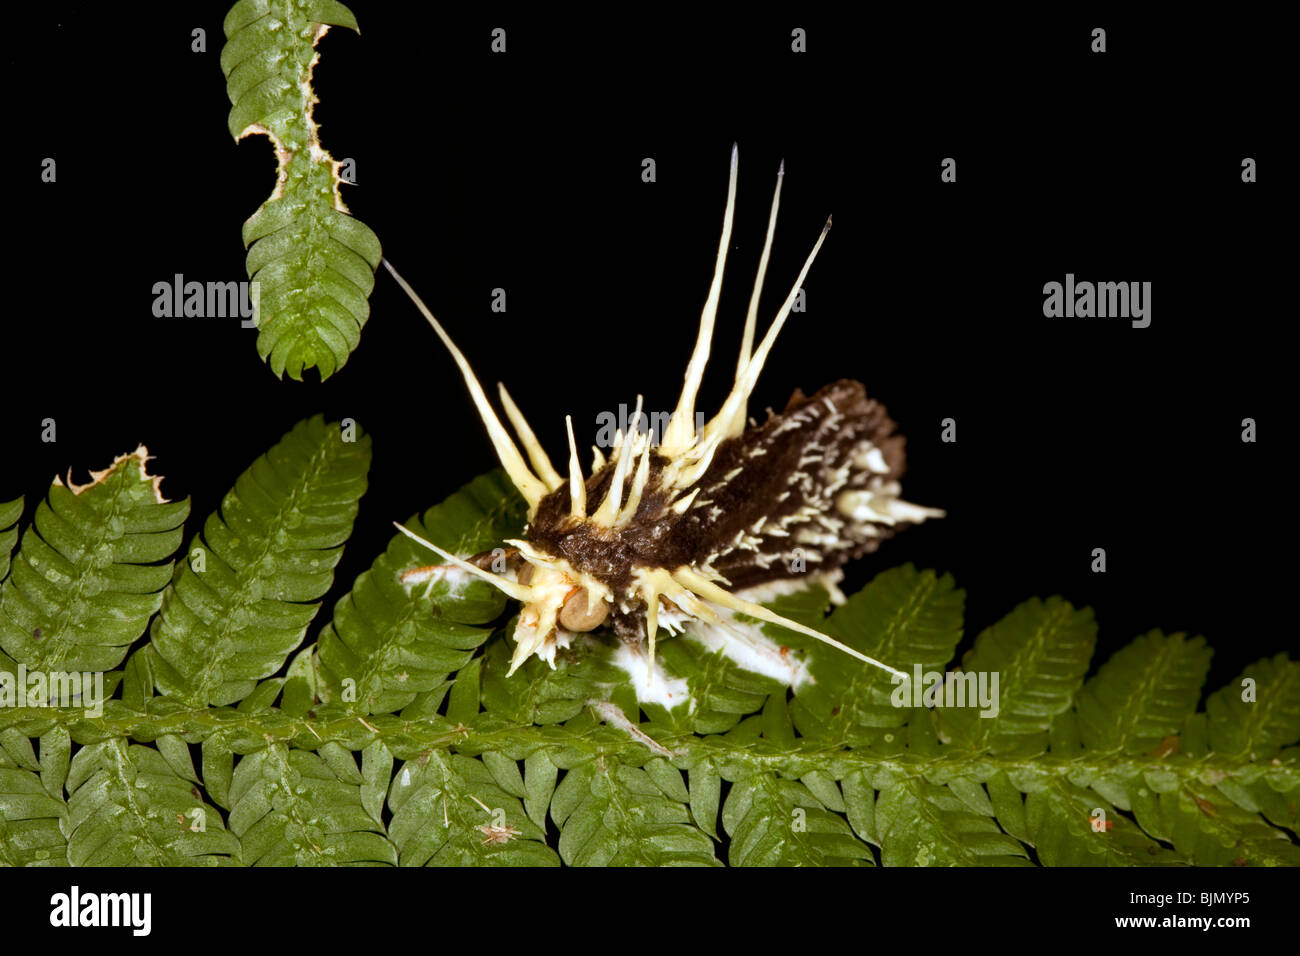 Fungo parassita Cordiceps sp. attacca una falena Foto Stock